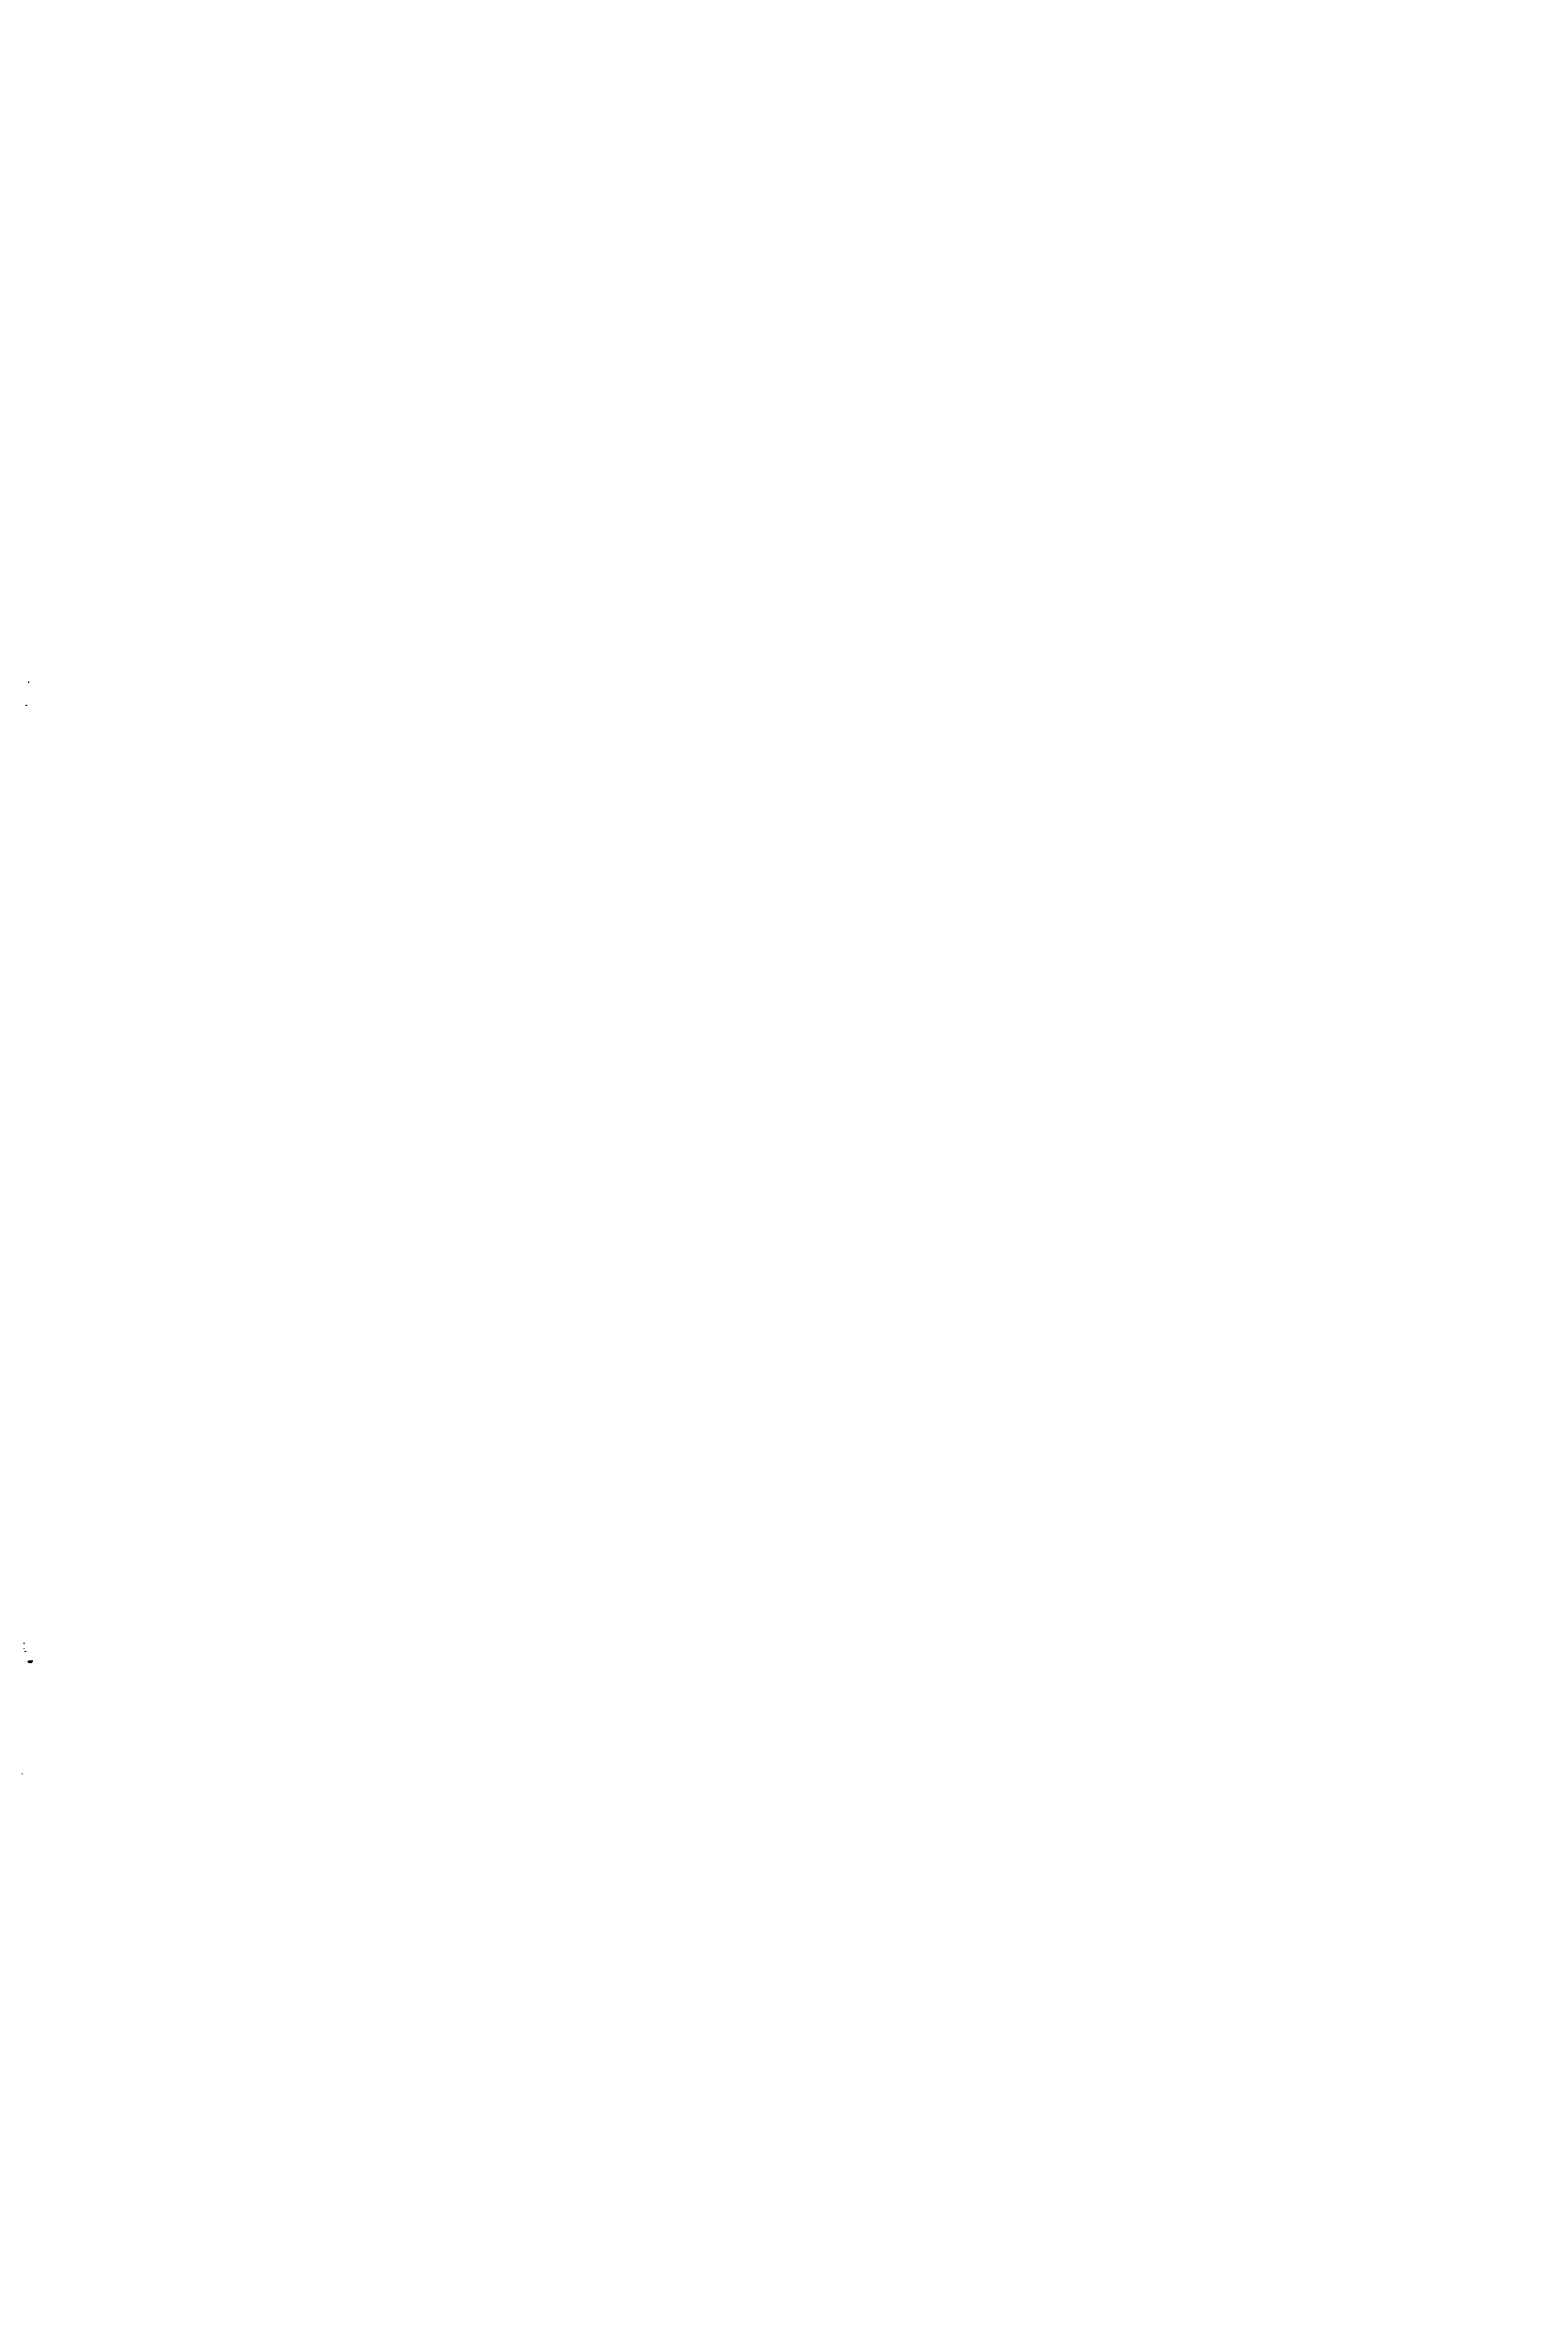 Рис. 7.9. Схема окраски пневматическим распылением с применением воздушной завесы 
